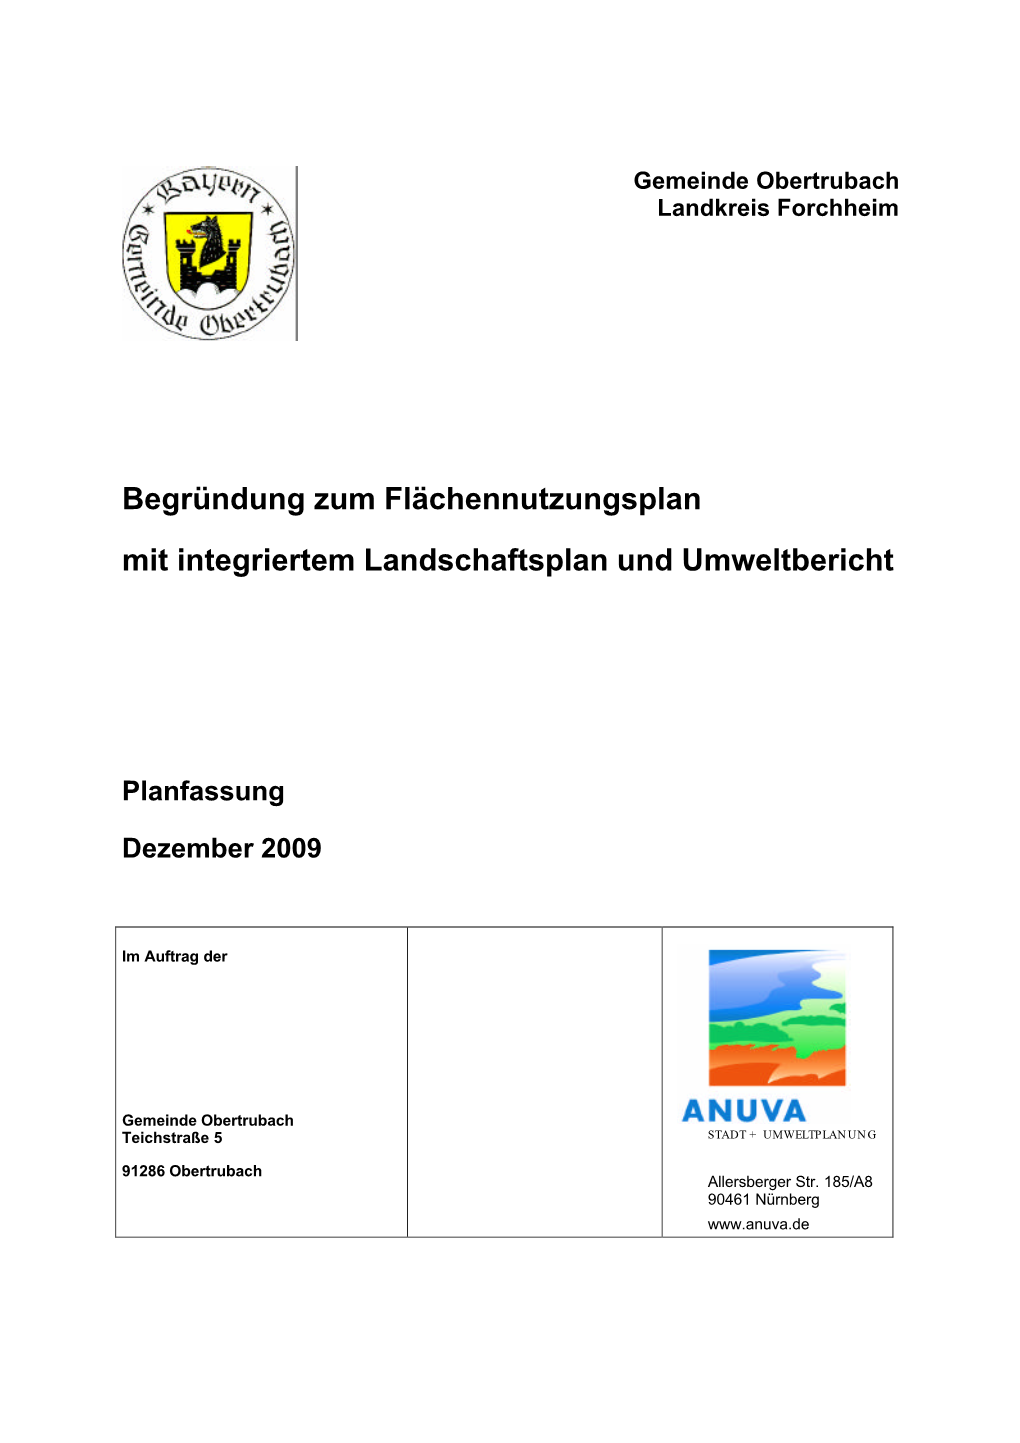 Begründung Zum Flächennutzungsplan Mit Integriertem Landschaftsplan Und Umweltbericht